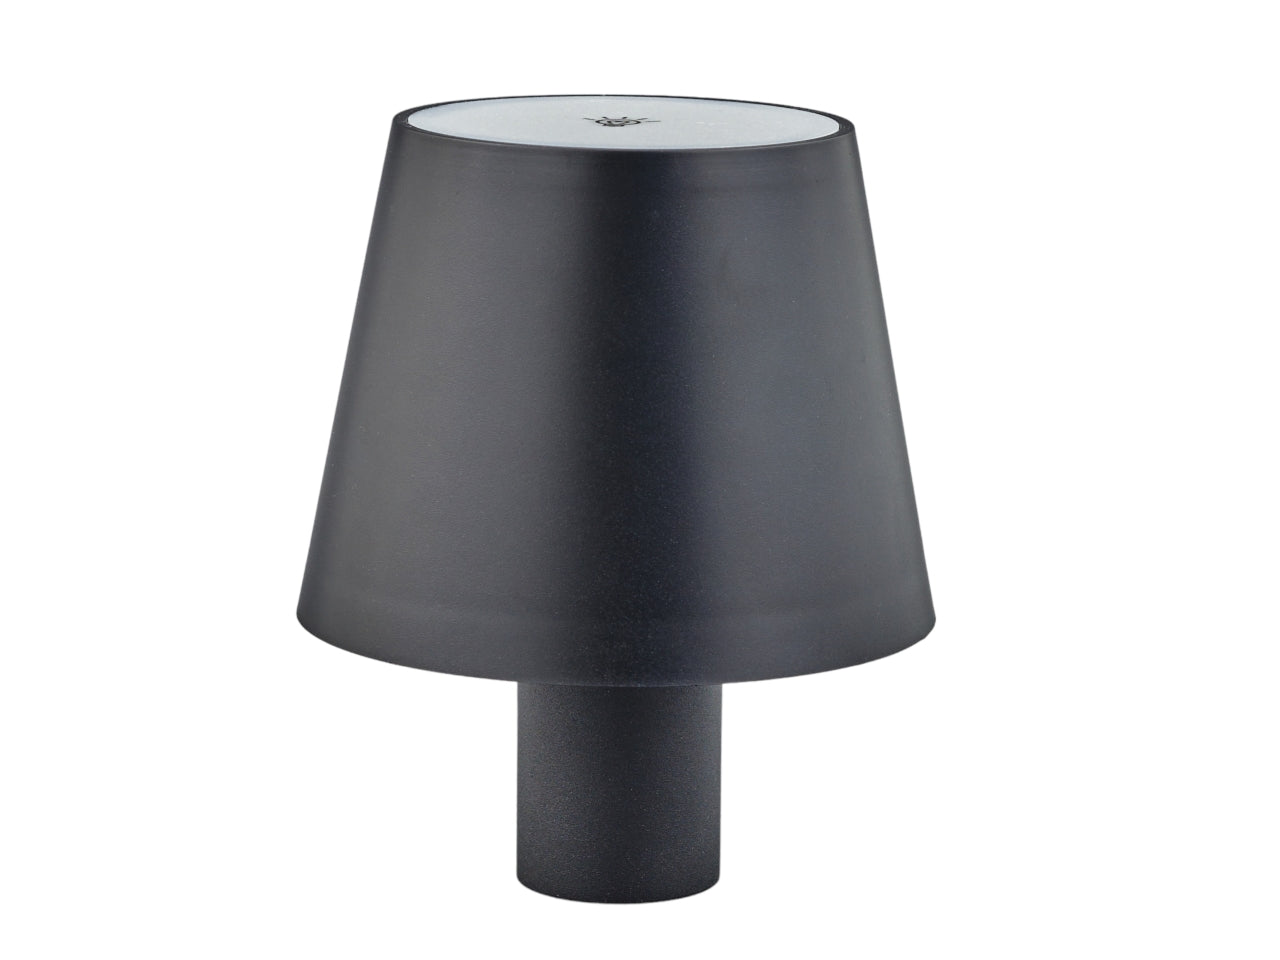 Lampada touch nero luce semi diffusa, stile moderno, 13,5x10,7 cm - C.B.R.